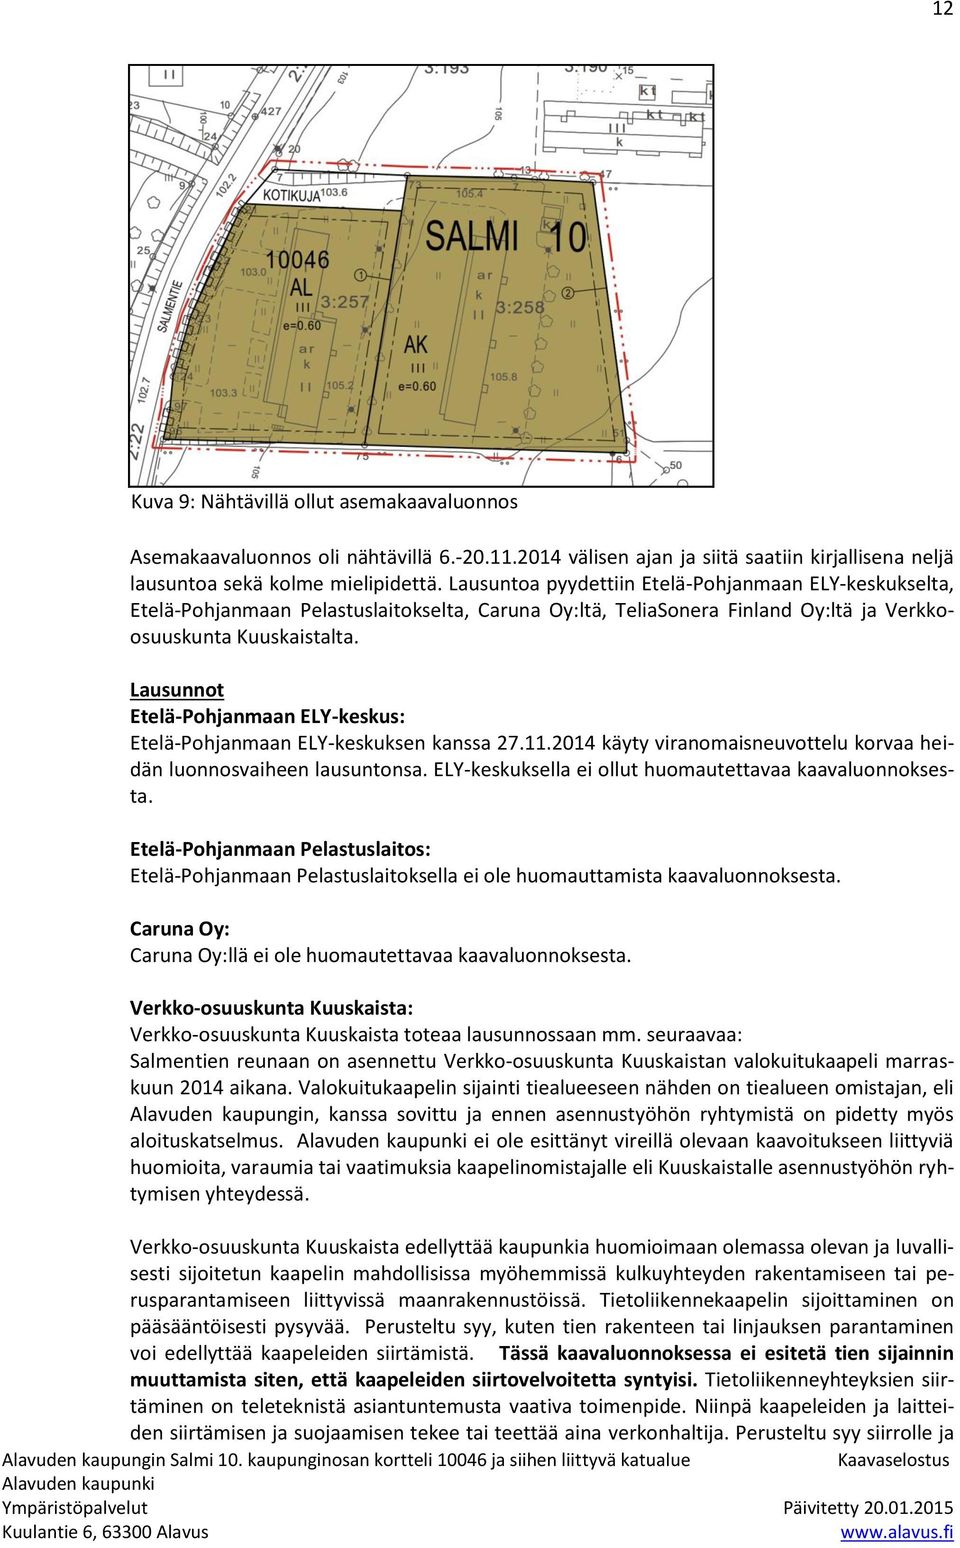 Lausunnot Etelä-Pohjanmaan ELY-keskus: Etelä-Pohjanmaan ELY-keskuksen kanssa 27.11.2014 käyty viranomaisneuvottelu korvaa heidän luonnosvaiheen lausuntonsa.